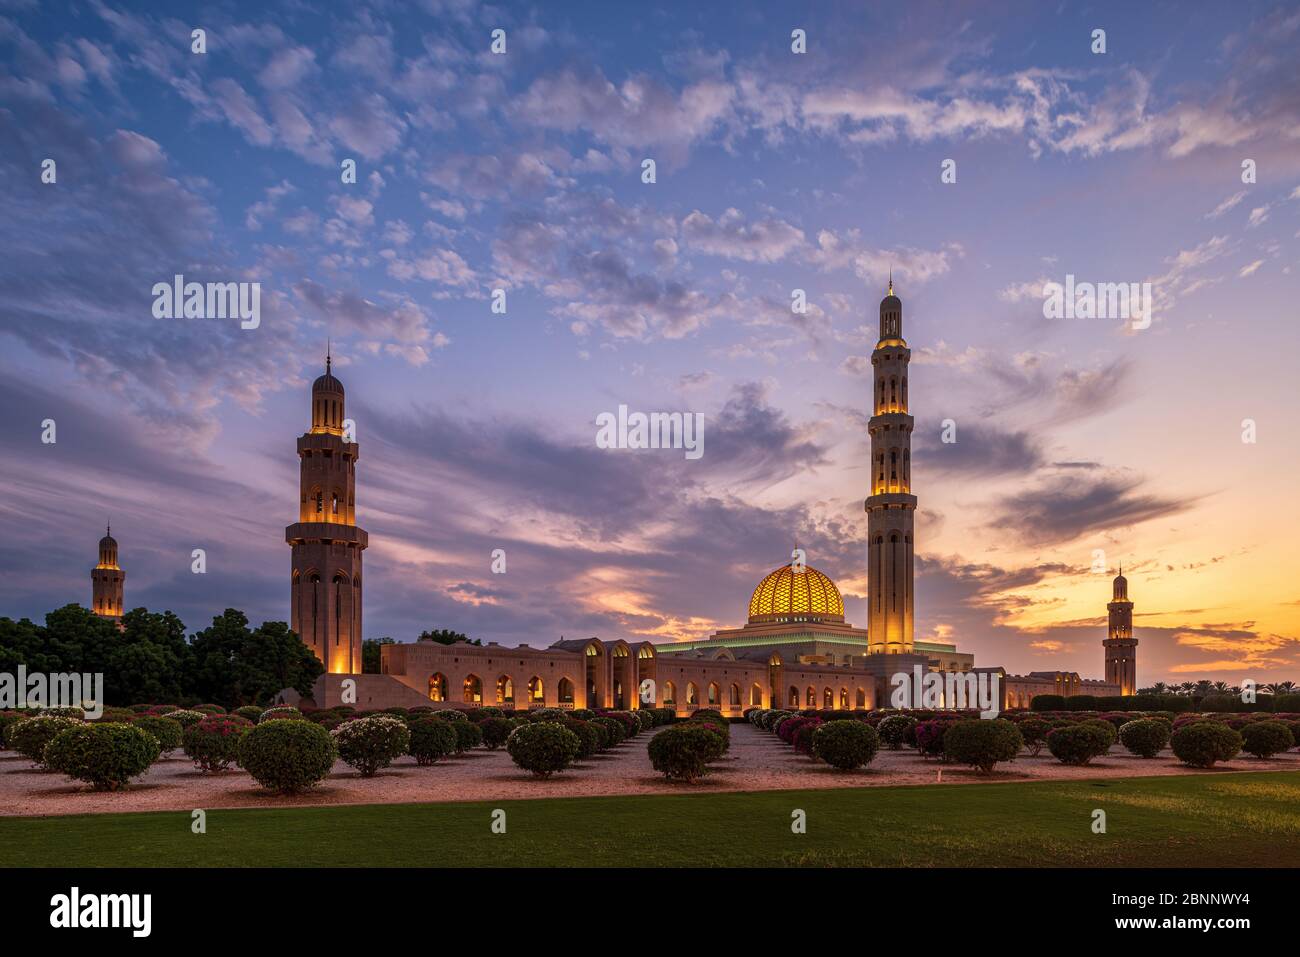 Moschea, casa di preghiera, cupola, minareto, parco, giardino, crepuscolo, illuminazione, cielo serale, nuvole, paesaggio nuvoloso, alberi Foto Stock